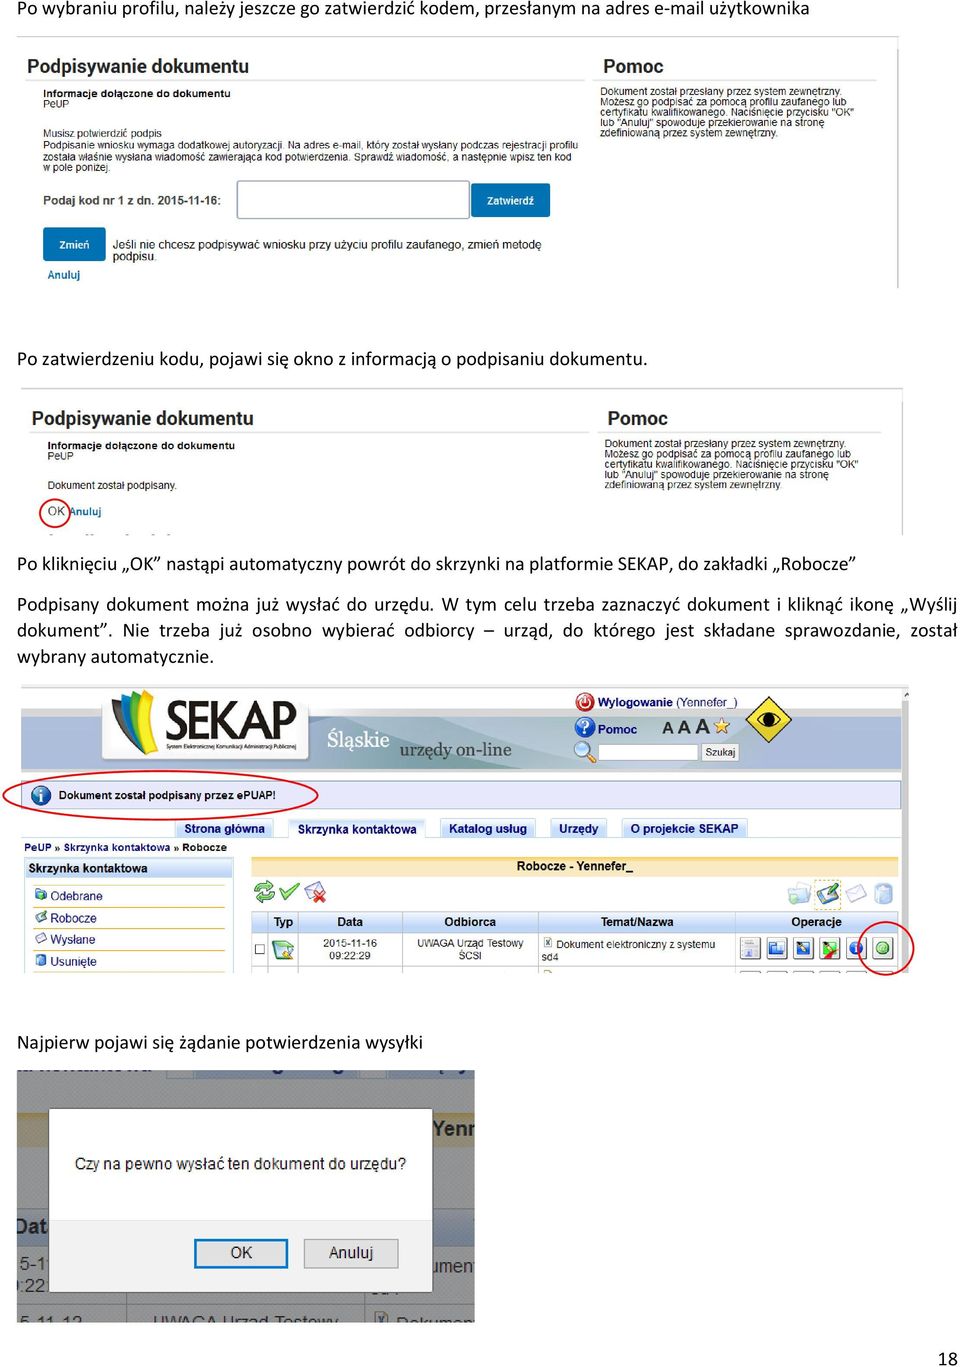 Po kliknięciu OK nastąpi automatyczny powrót do skrzynki na platformie SEKAP, do zakładki Robocze Podpisany dokument można już wysłać do